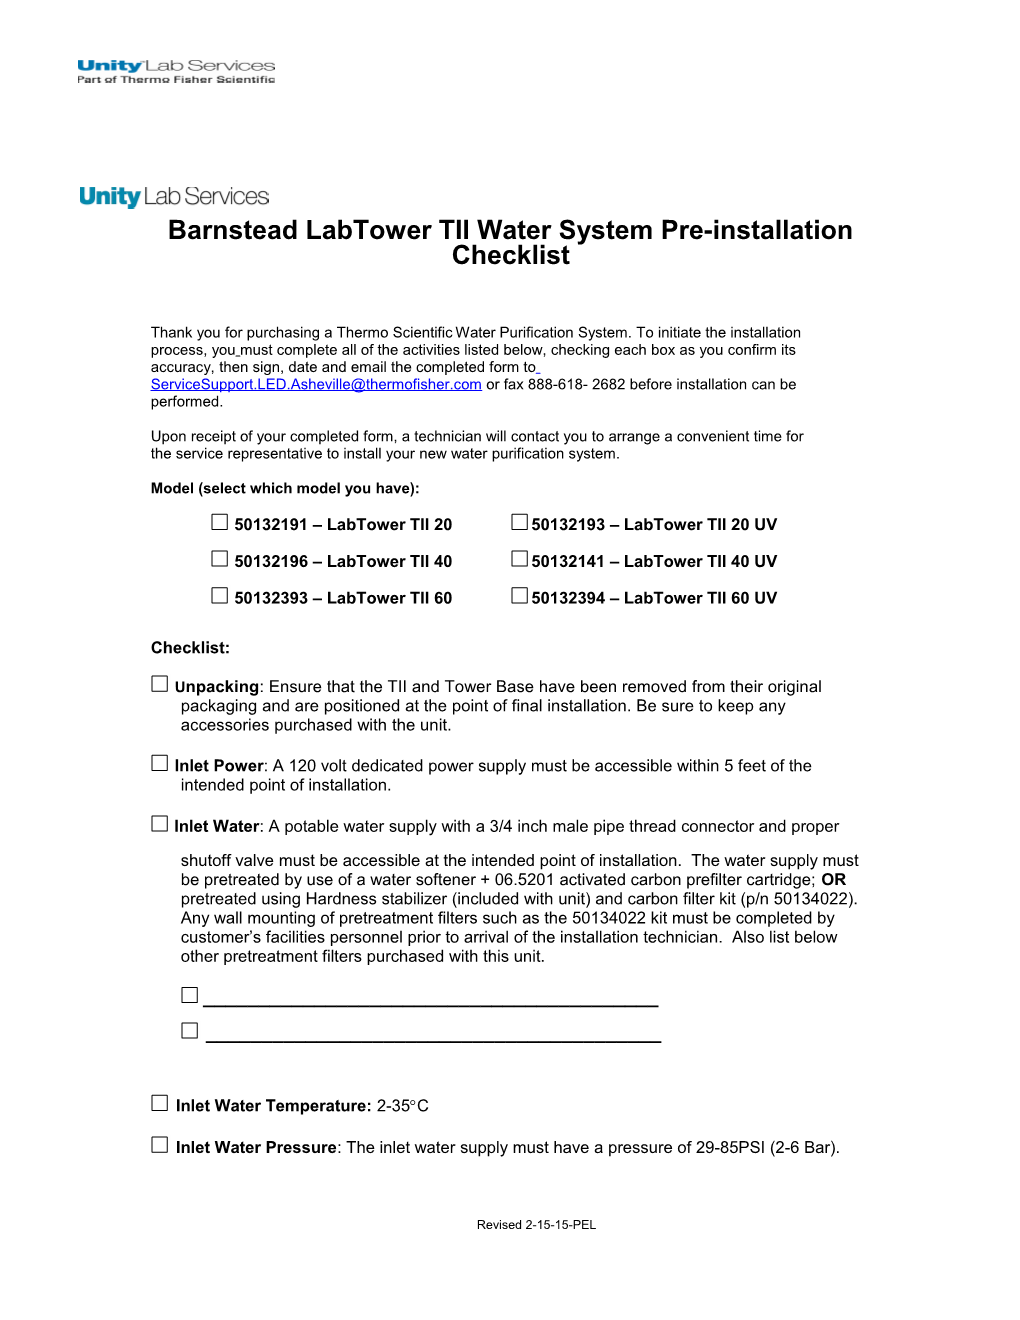 Barnstead Labtower TII Water System Pre-Installation Checklist